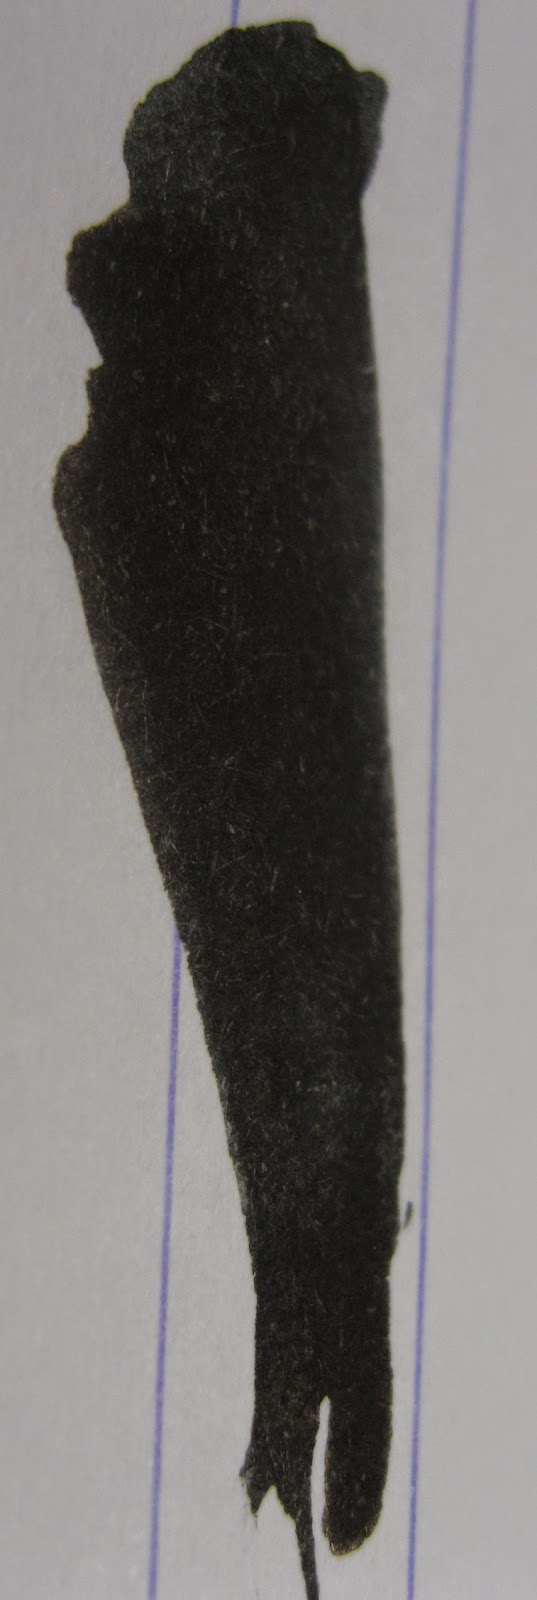 Graf Von Faber-Castell Carbon Black Ink Sample (3ml Vial)